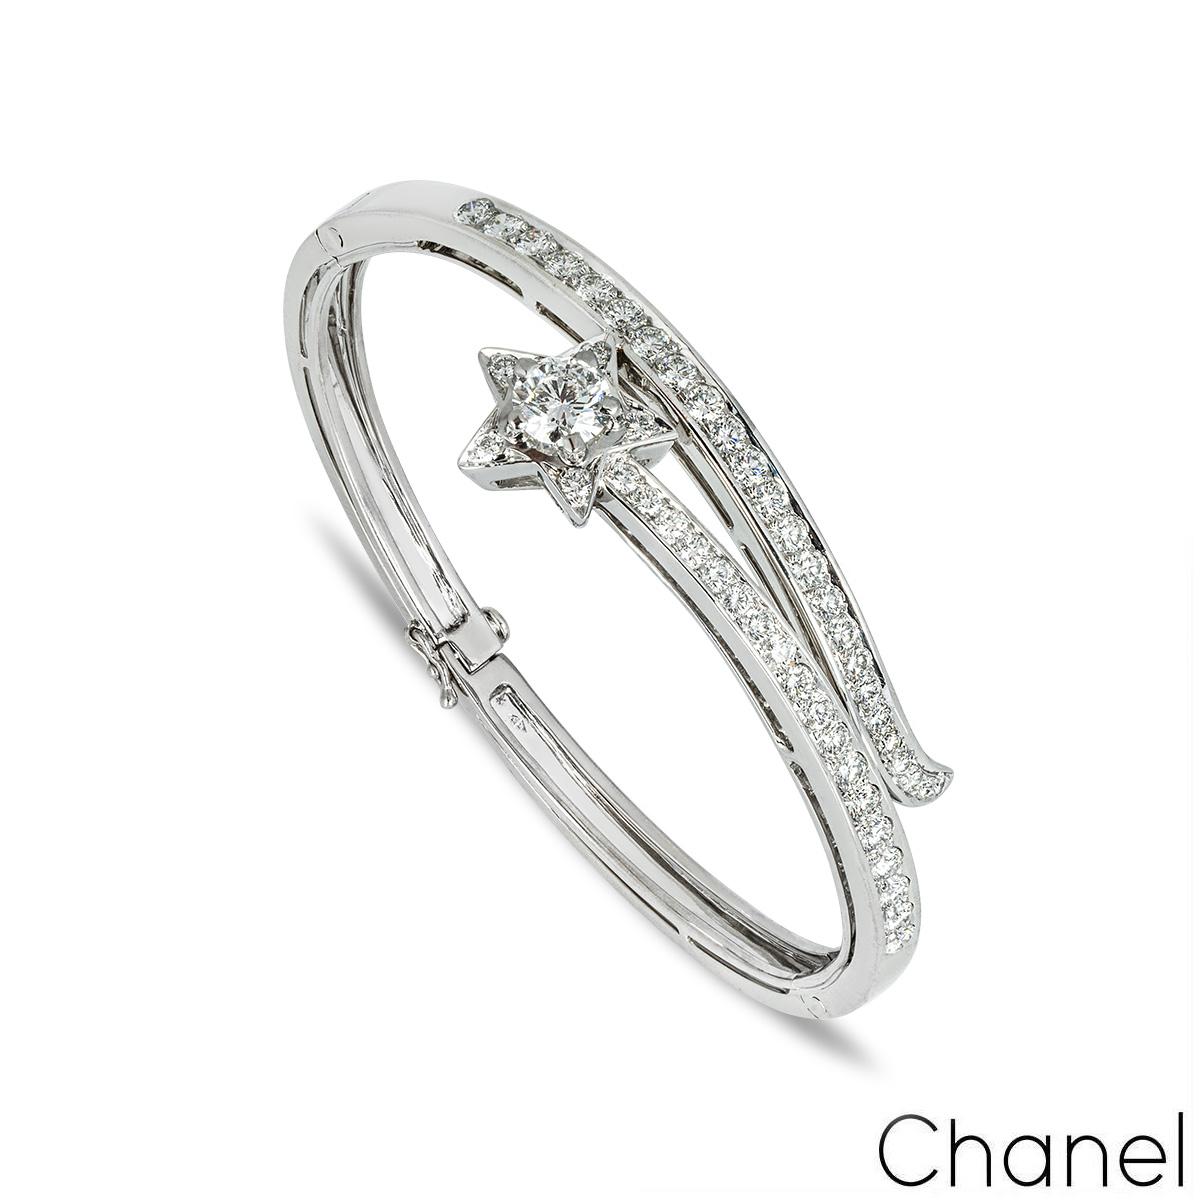 Ein wunderschönes Armband aus 18 Karat Weißgold und Diamanten von Chanel aus der Collection'S Comete. Das Armband besteht aus einem Sternmotiv in der Mitte mit einem 1,00ct runden Brillanten in einer 4-Krallen-Fassung in der Mitte des Sterns, Farbe